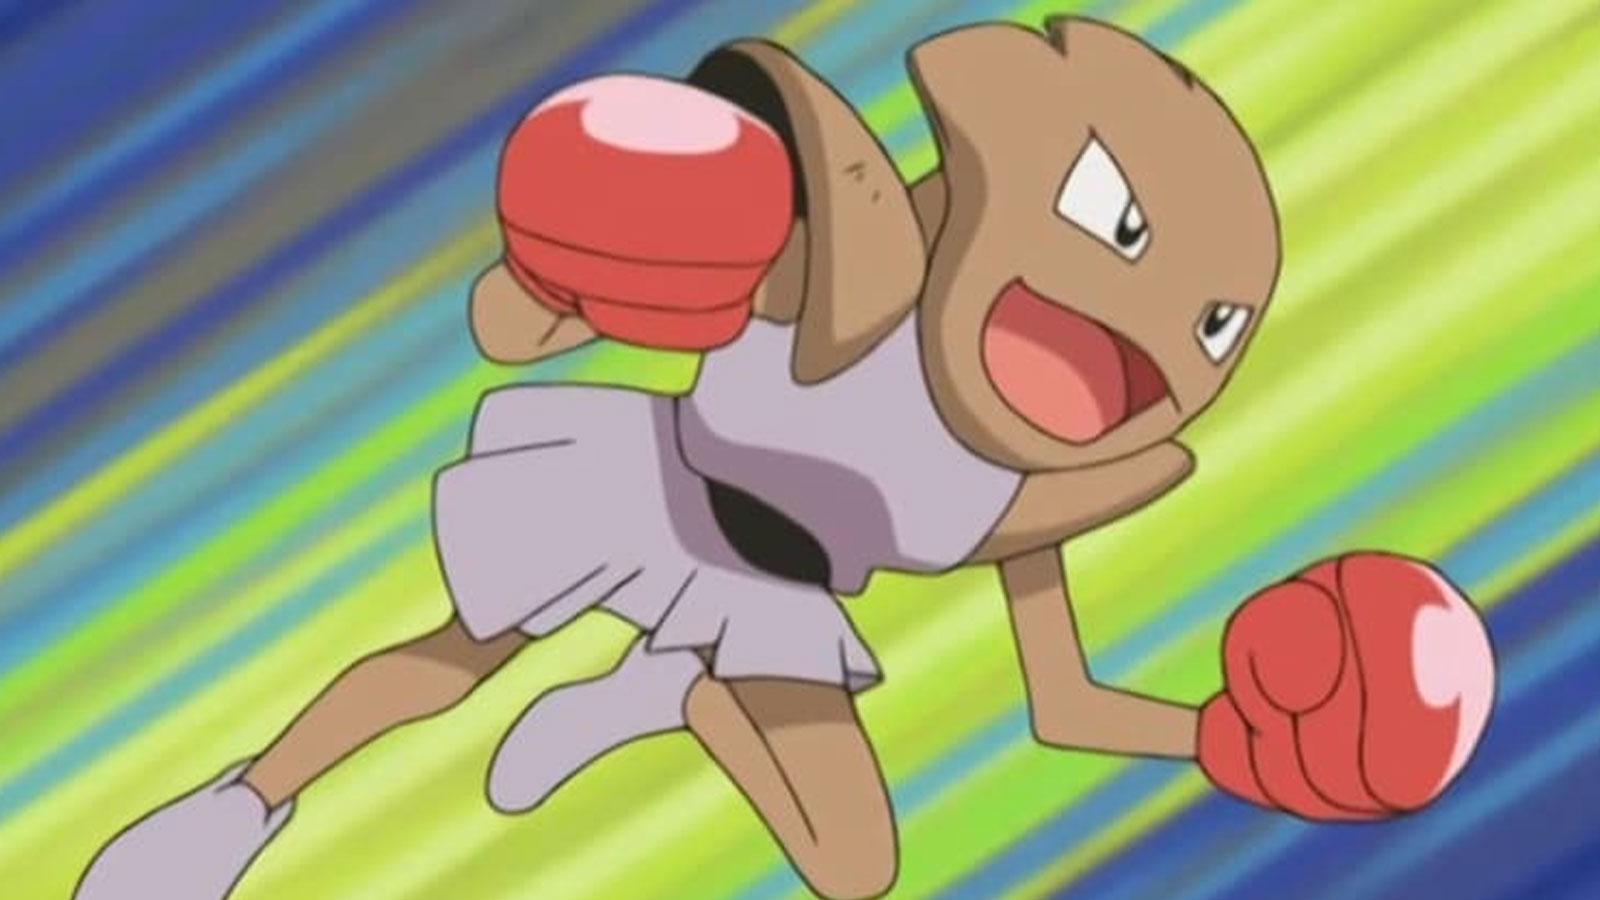 Tygnon dans la série Pokémon